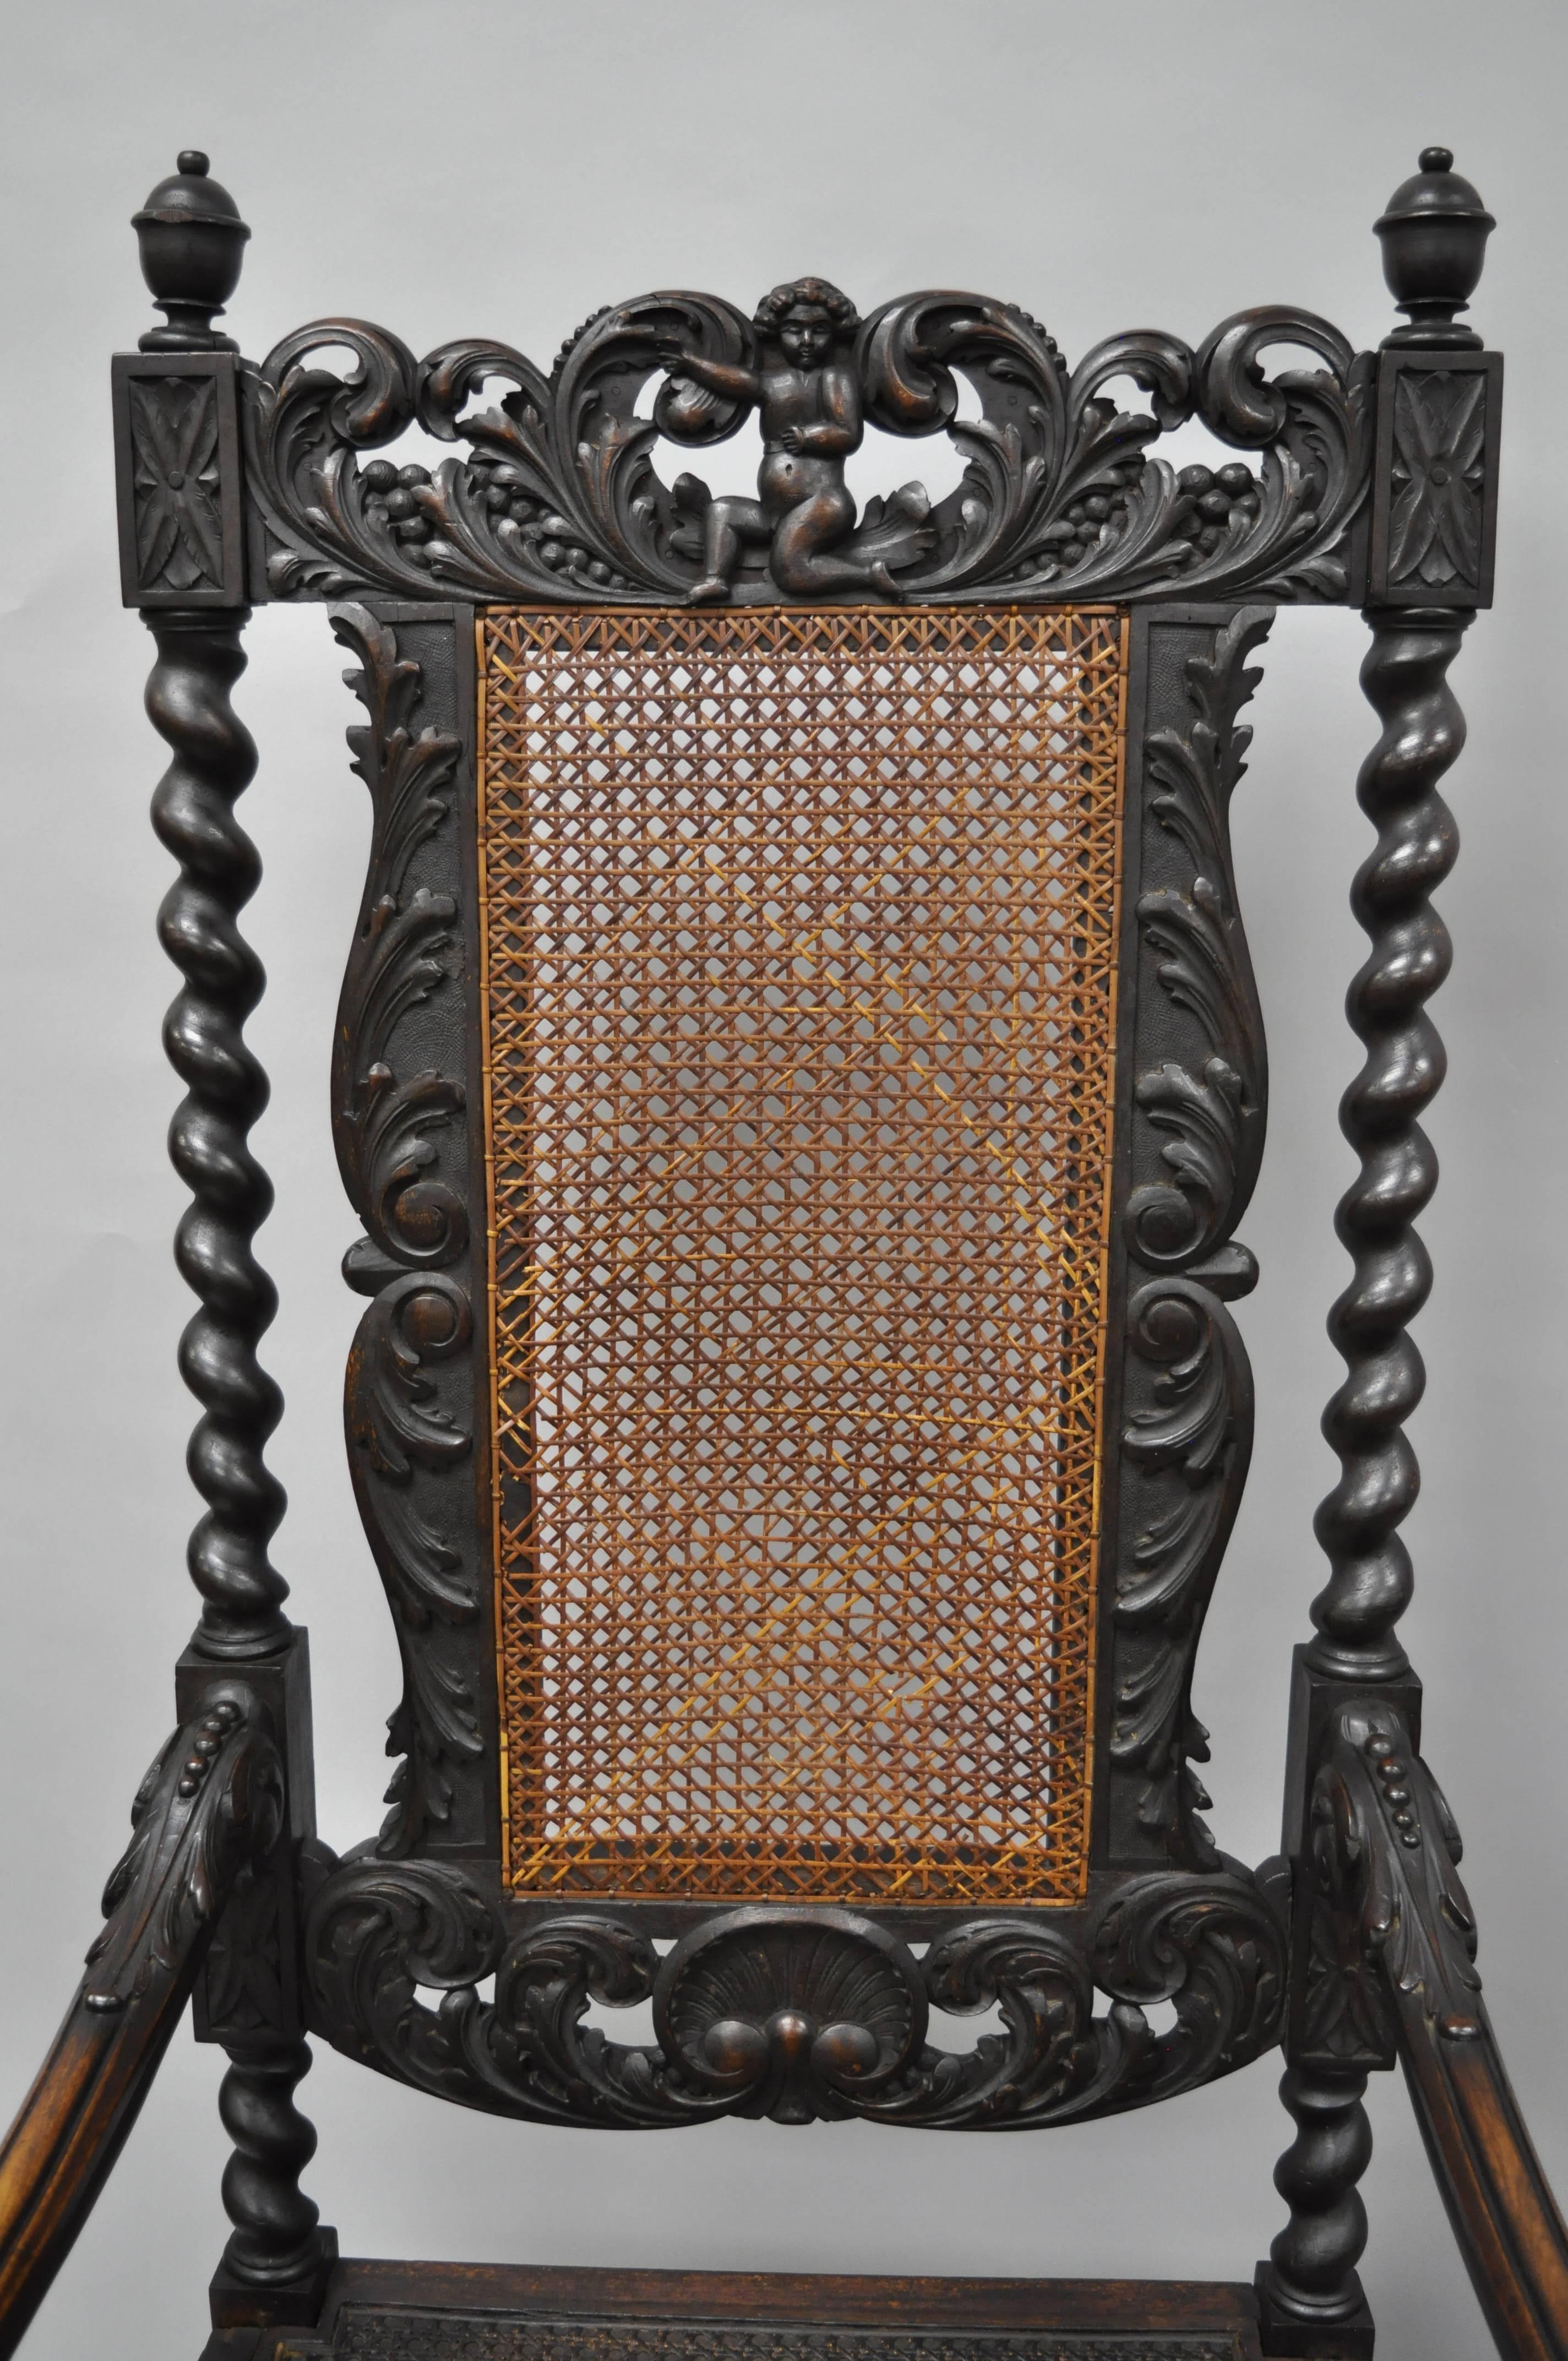 European Jacobean Renaissance Revival Cherub Carved Parlor Throne Chairs Armchairs